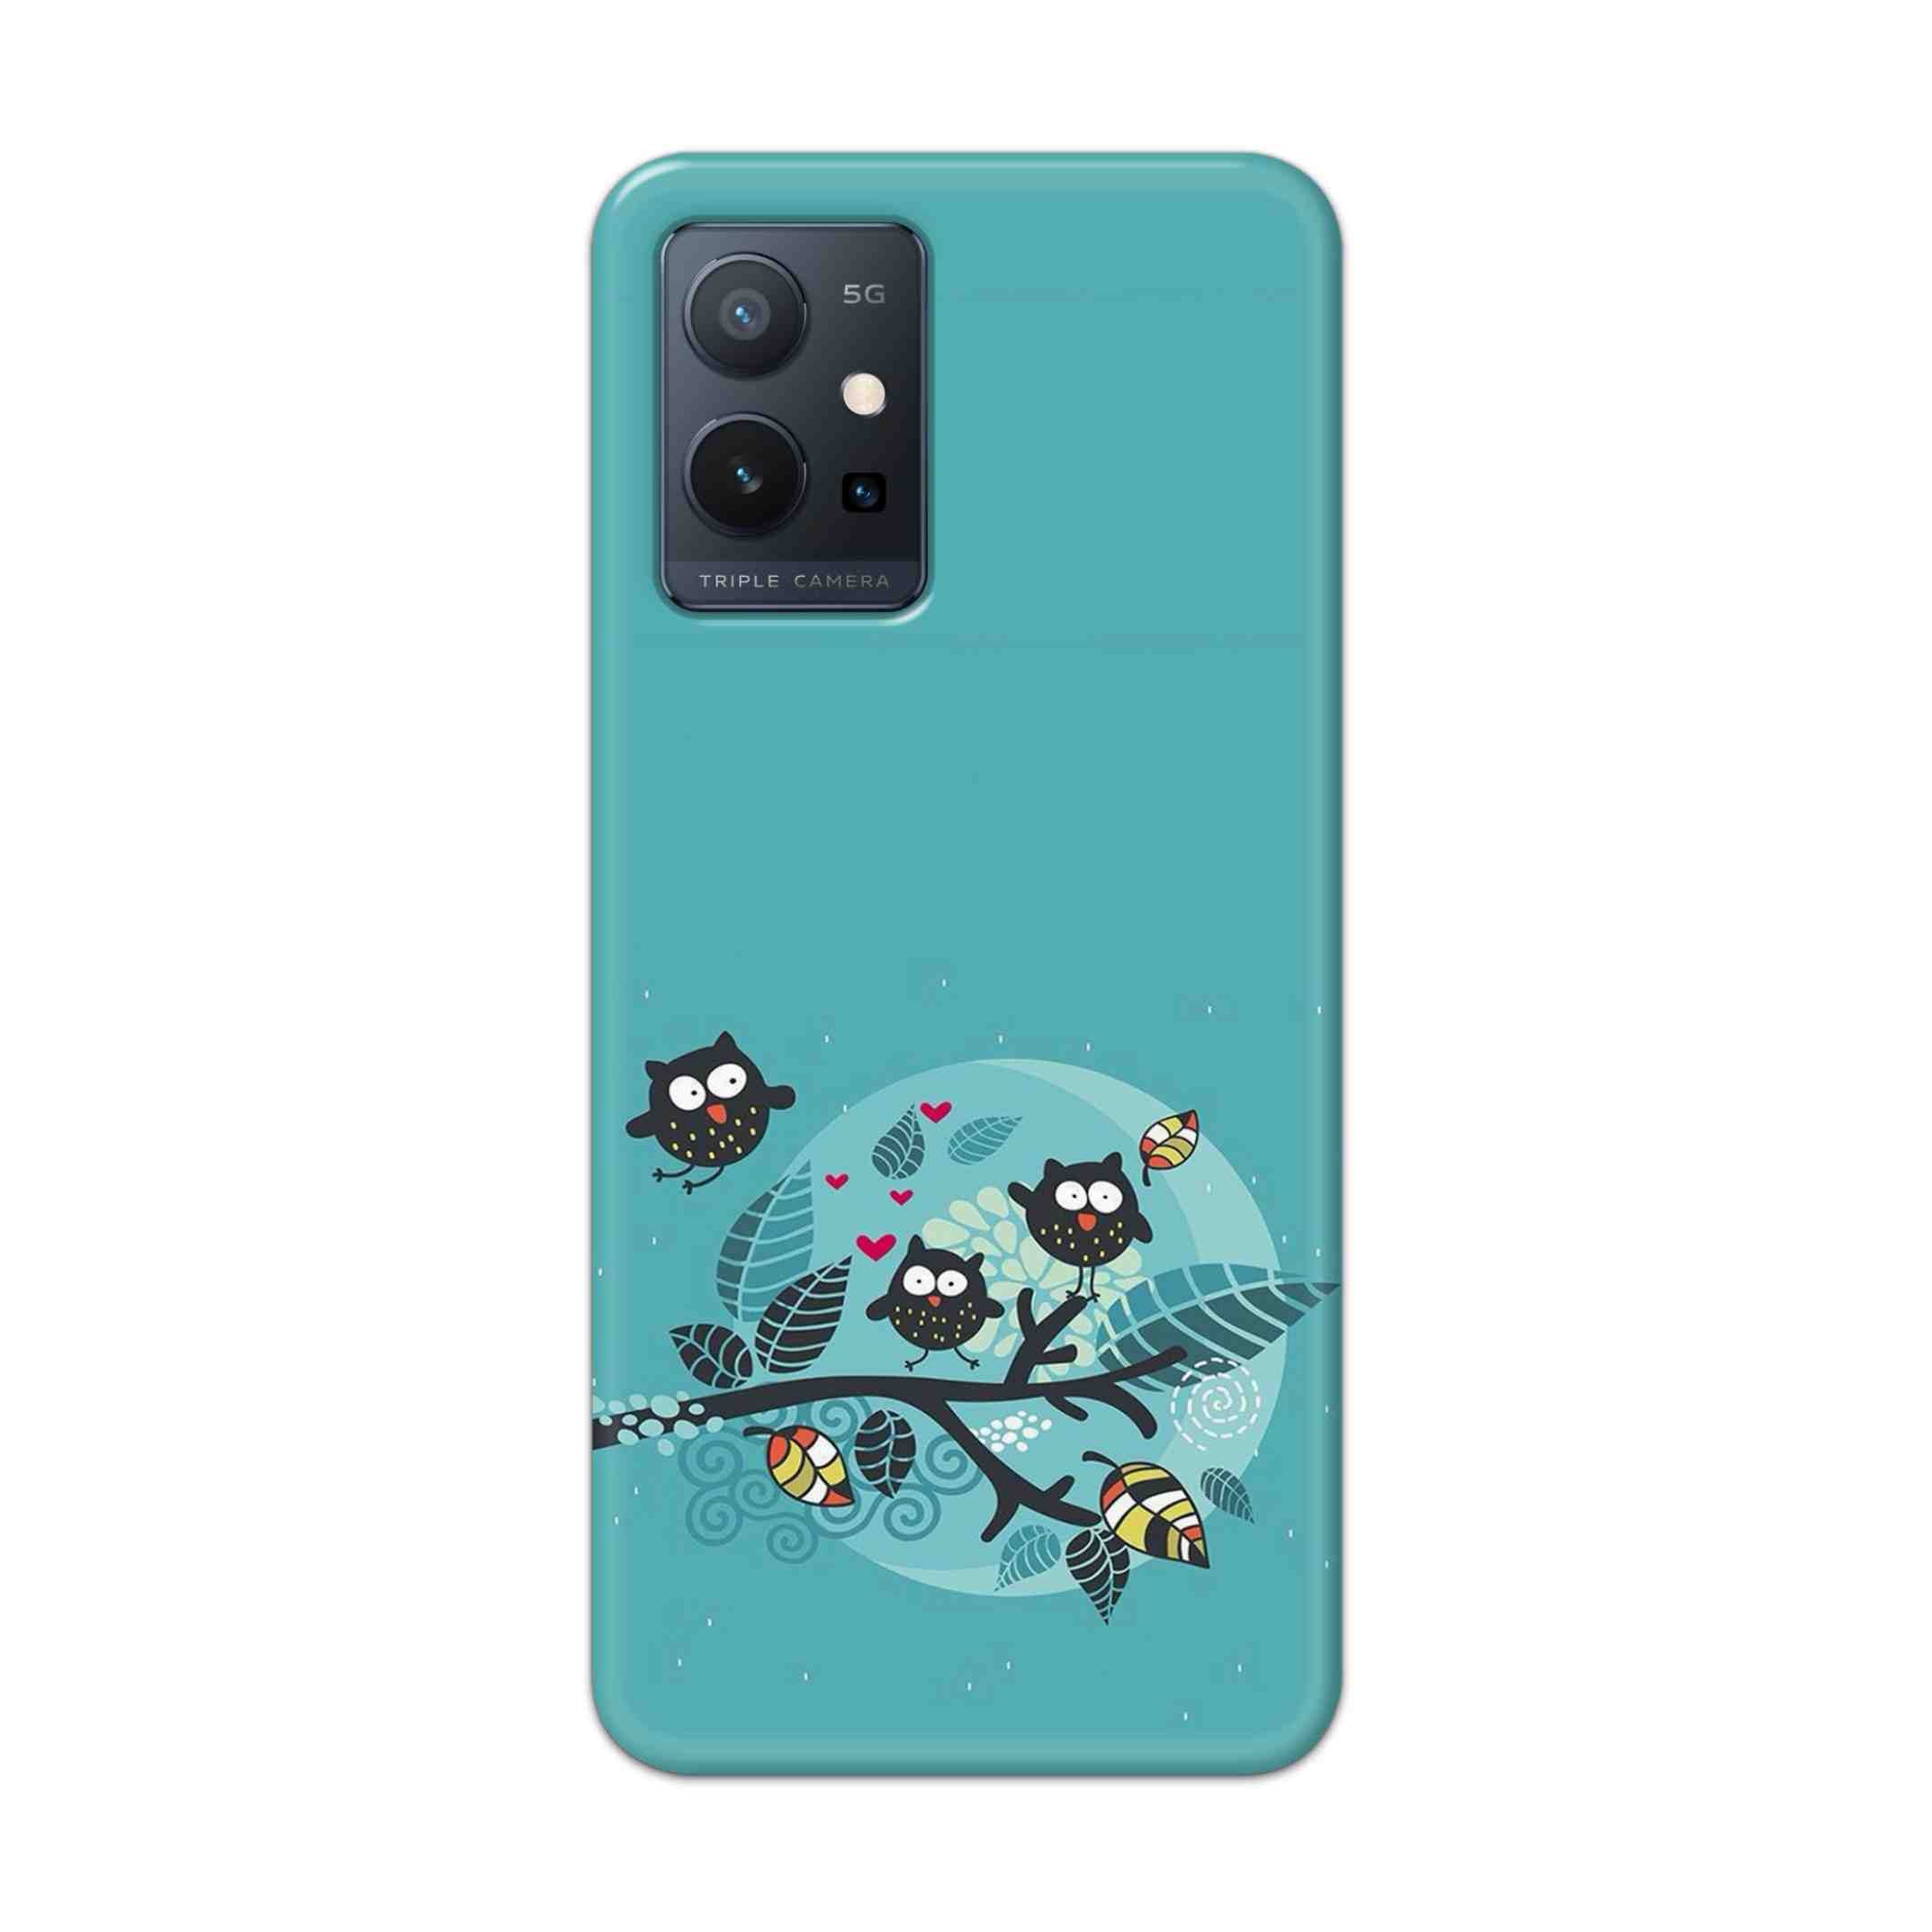 Buy Owl Hard Back Mobile Phone Case Cover For Vivo T1 5G Online